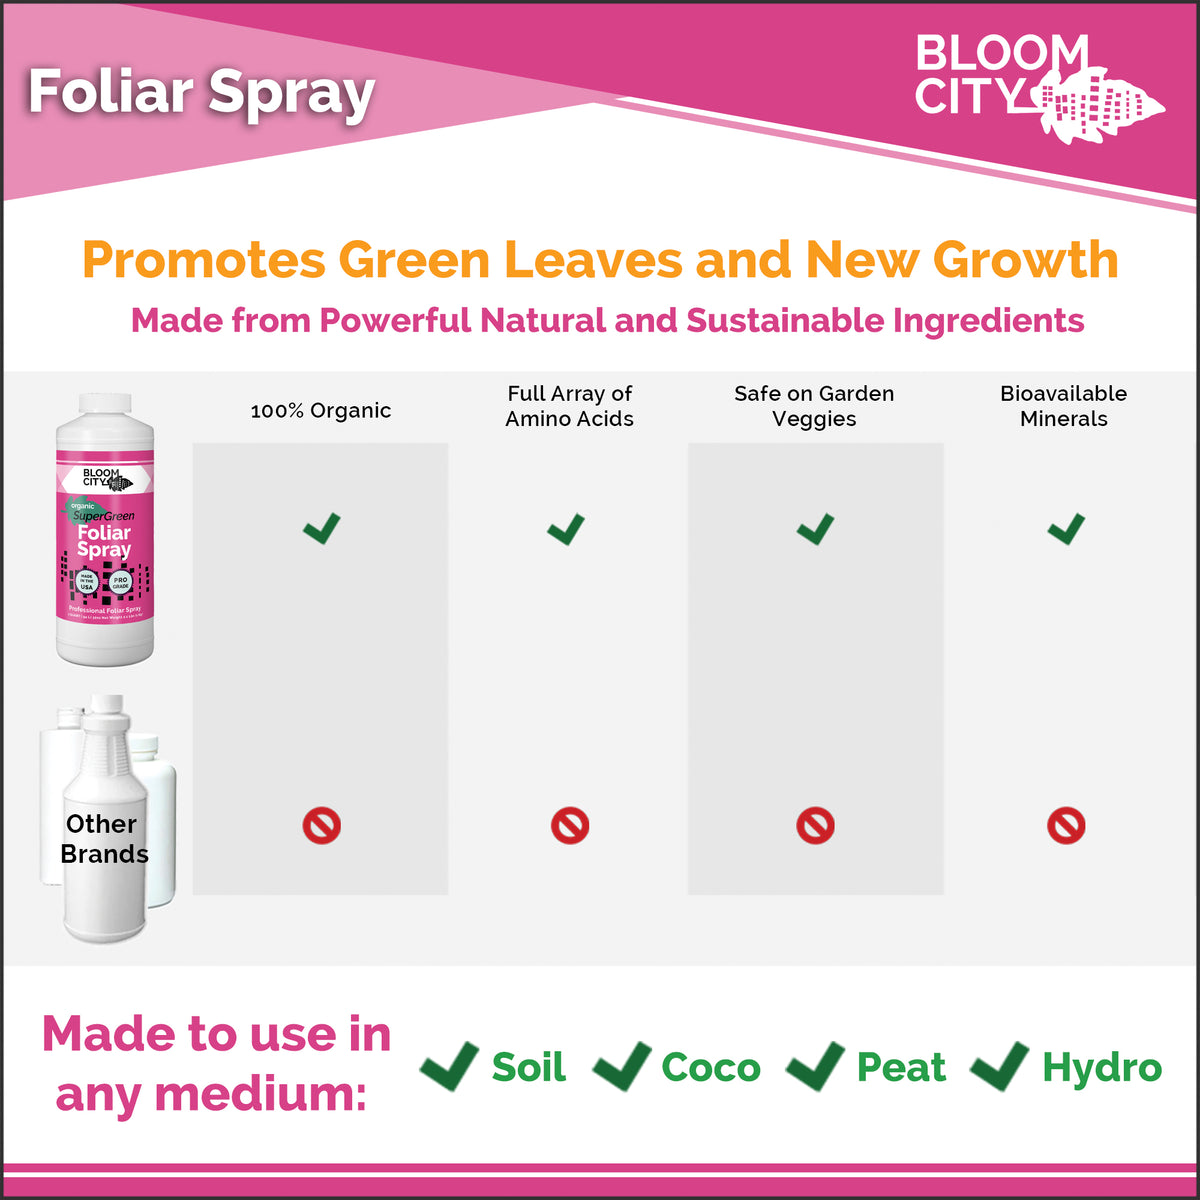 SuperGreen Foliar Spray | Organic